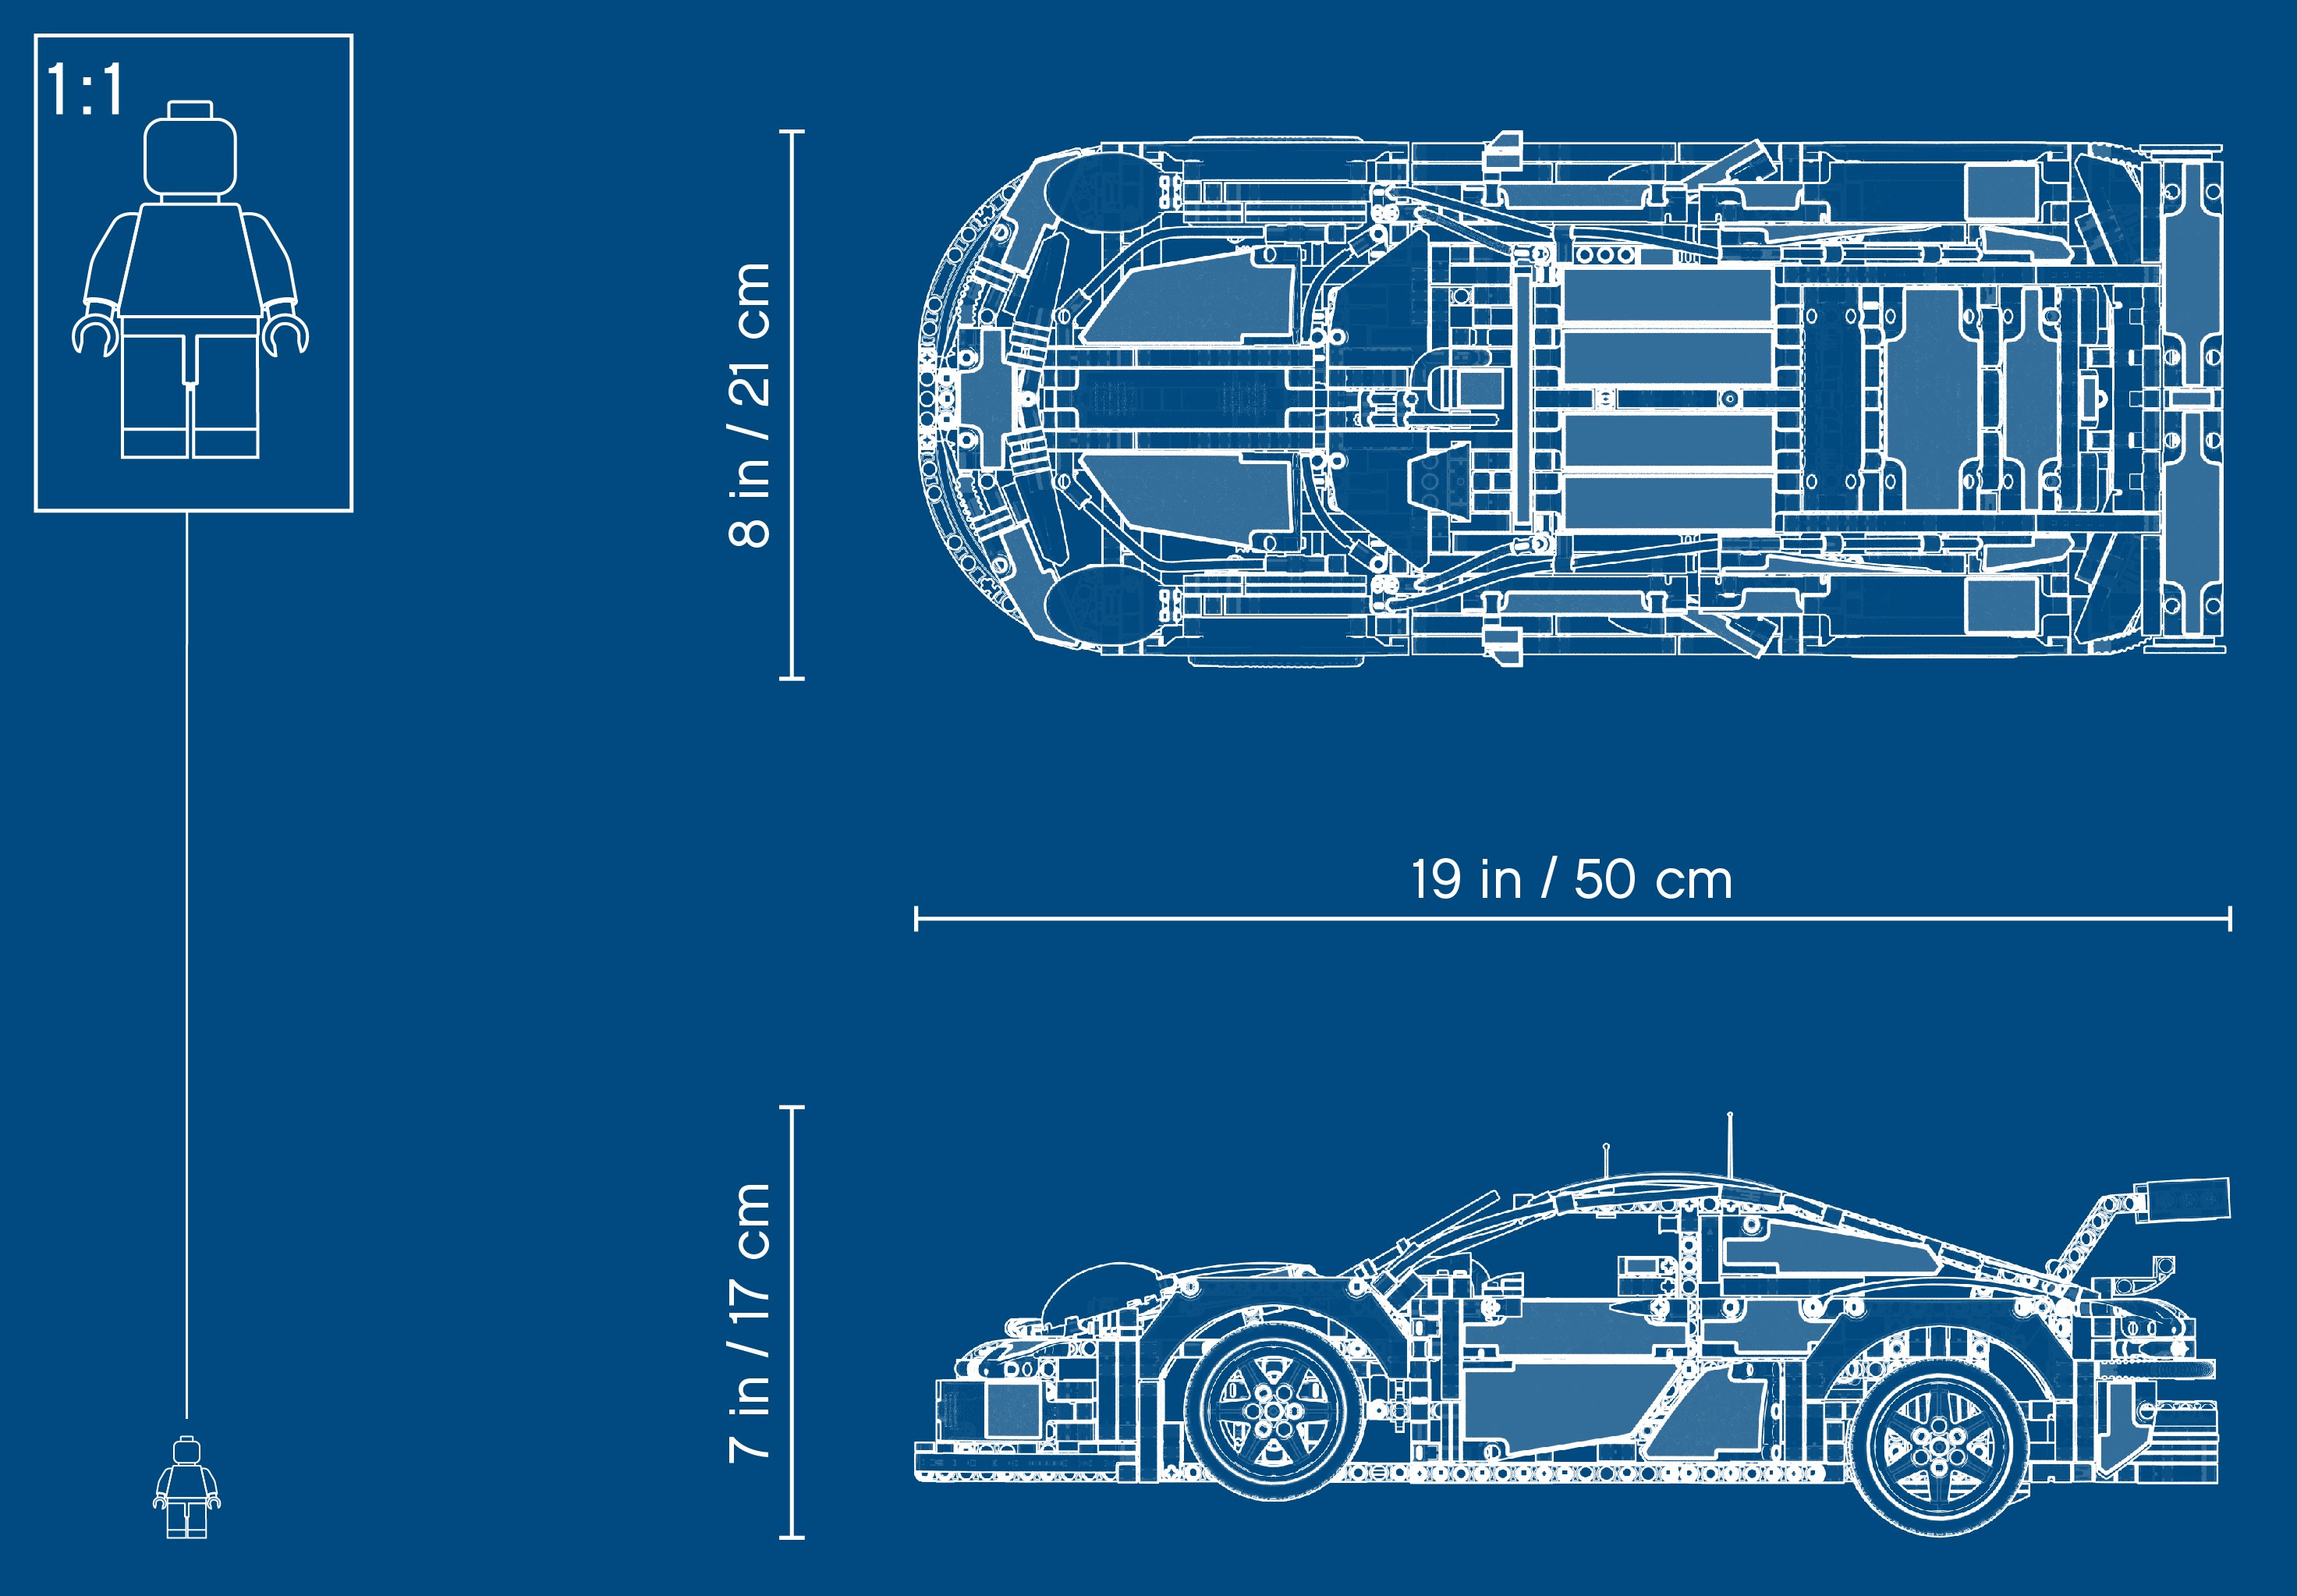 Porsche 911 RSR 42096 | Technic | Boutique LEGO® officielle BE